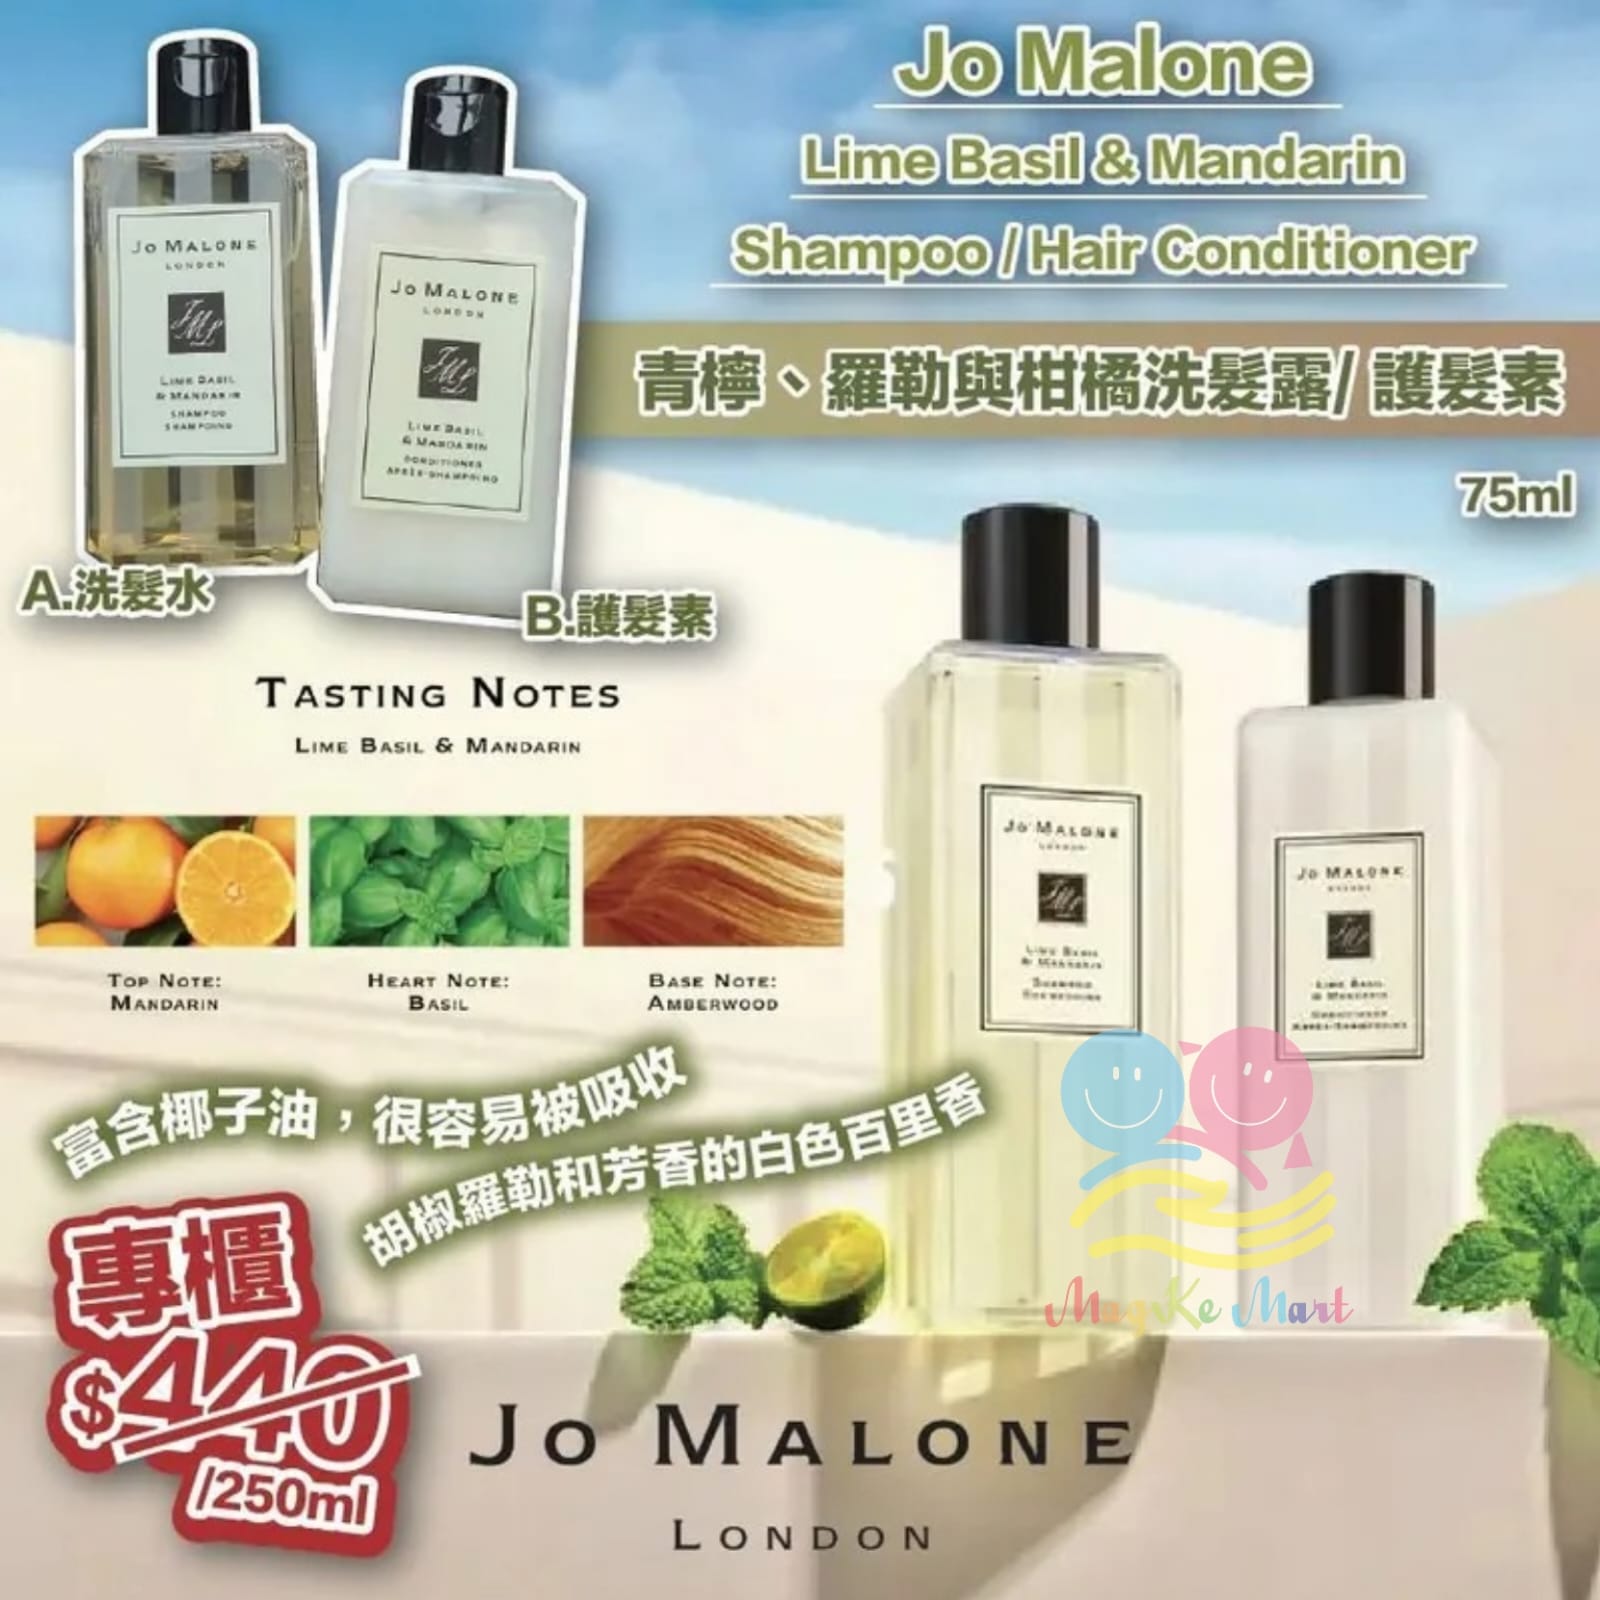 英國 Jo Malone Lime Basil & Mandarin shampoo / Hair Conditioner(75ml)